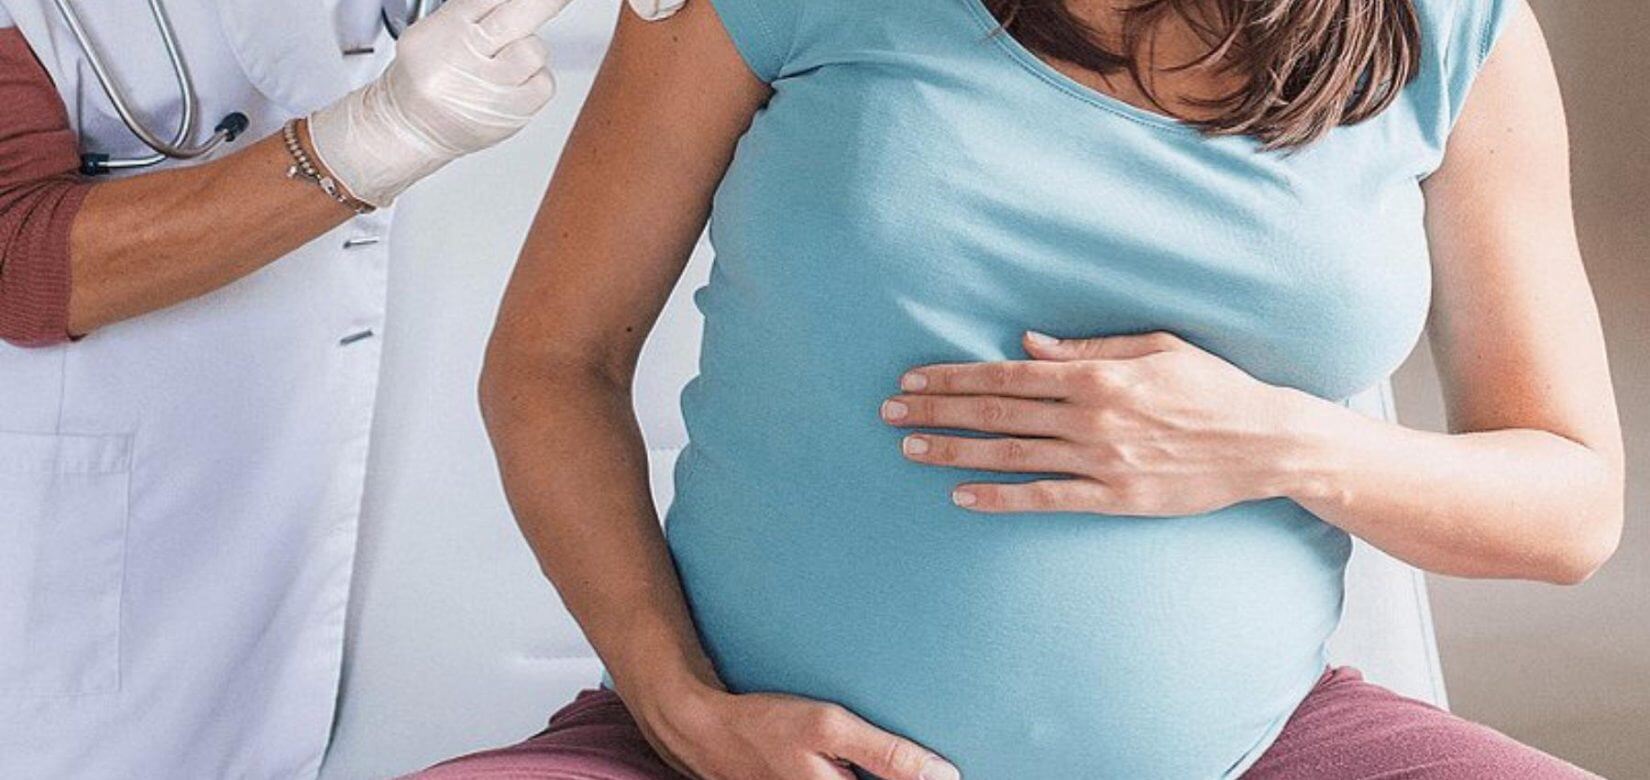 Εμβόλιο κορονοϊού: Τι ισχύει για την εγκυμοσύνη και την εξωσωματική γονιμοποίηση εν μέσω πανδημίας